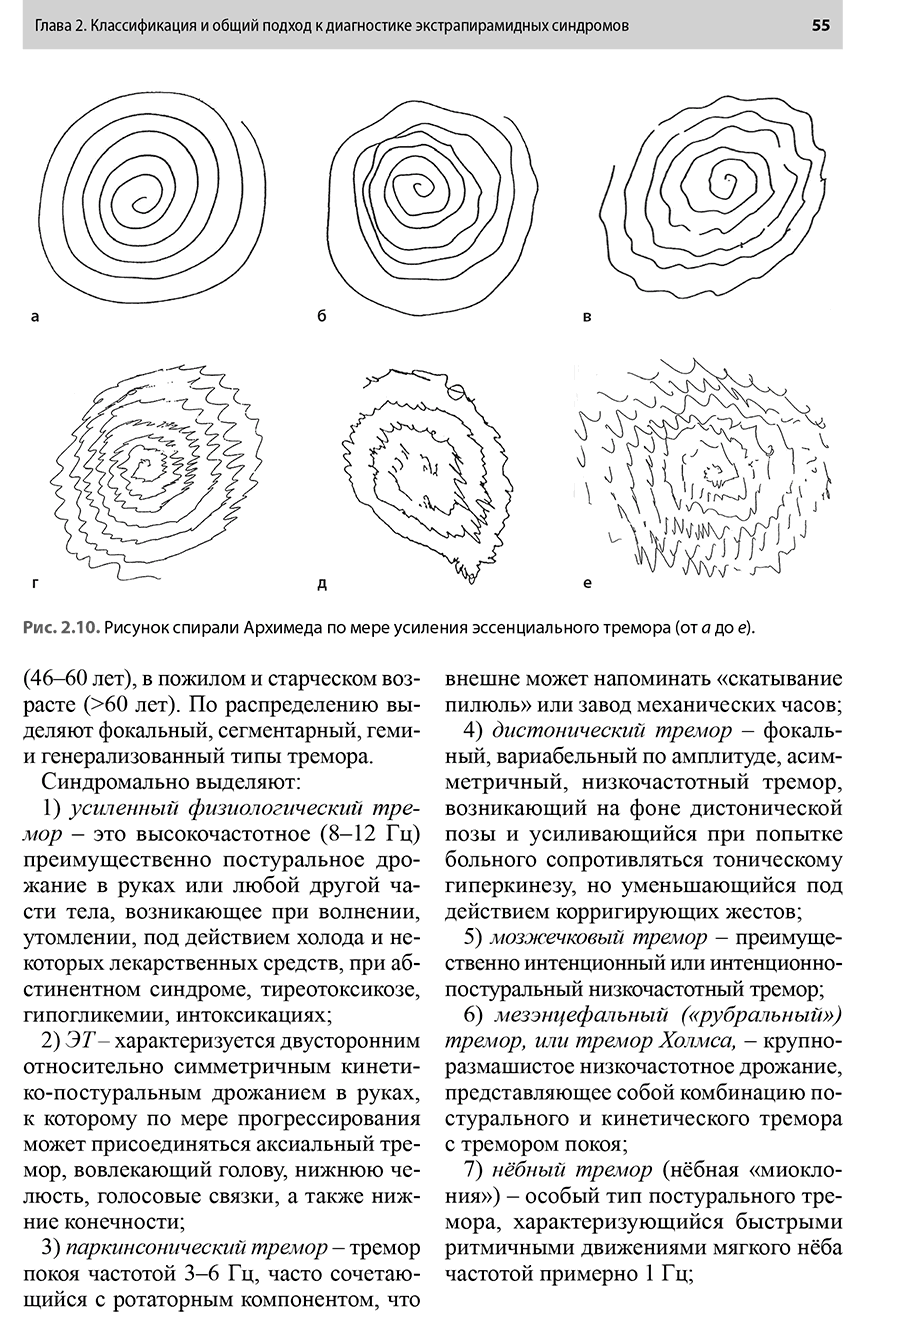 Рис. 2.10. Рисунок спирали Архимеда по мере усиления эссенциального тремора